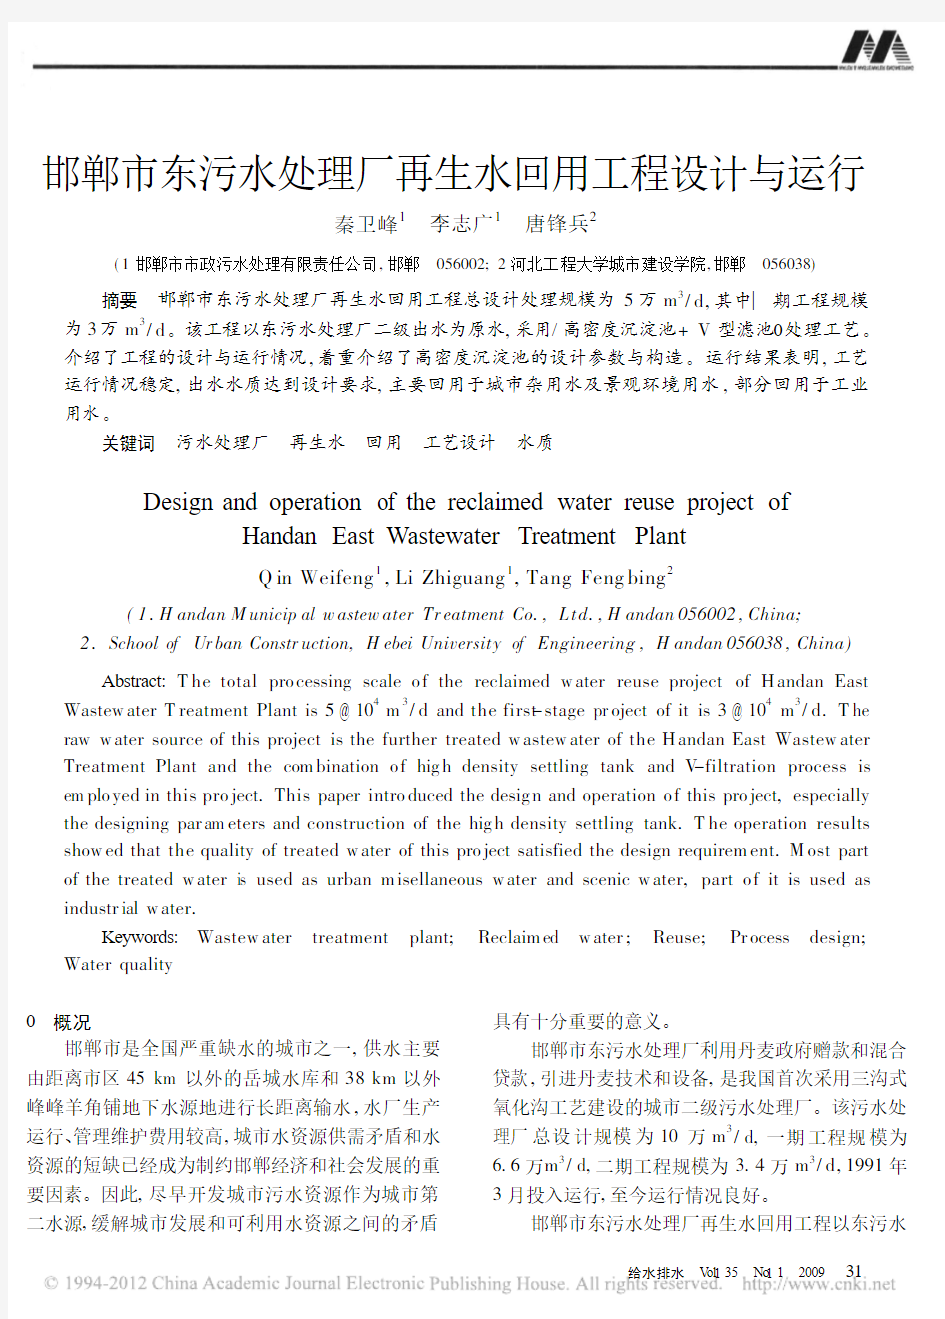 邯郸市东污水处理厂再生水回用工程设计与运行